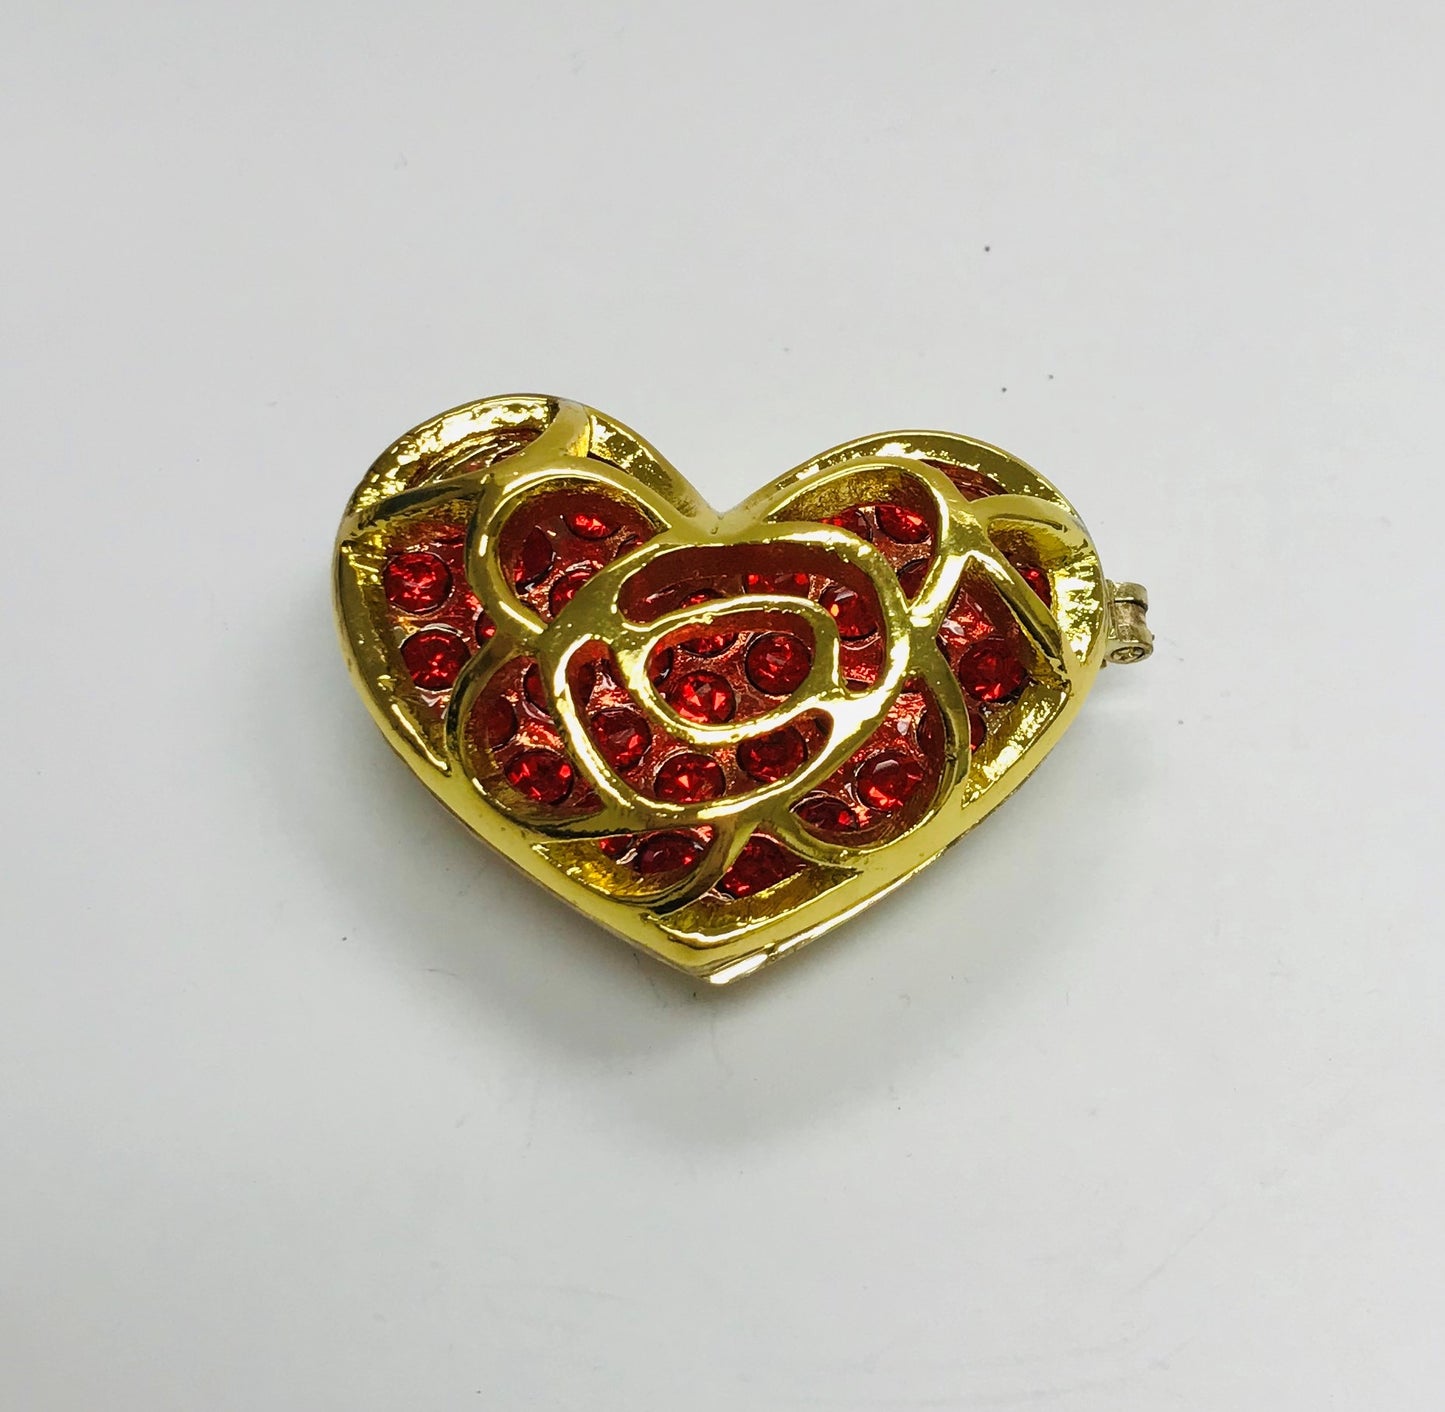 Cristiani Collezione Heart Trinket Box.